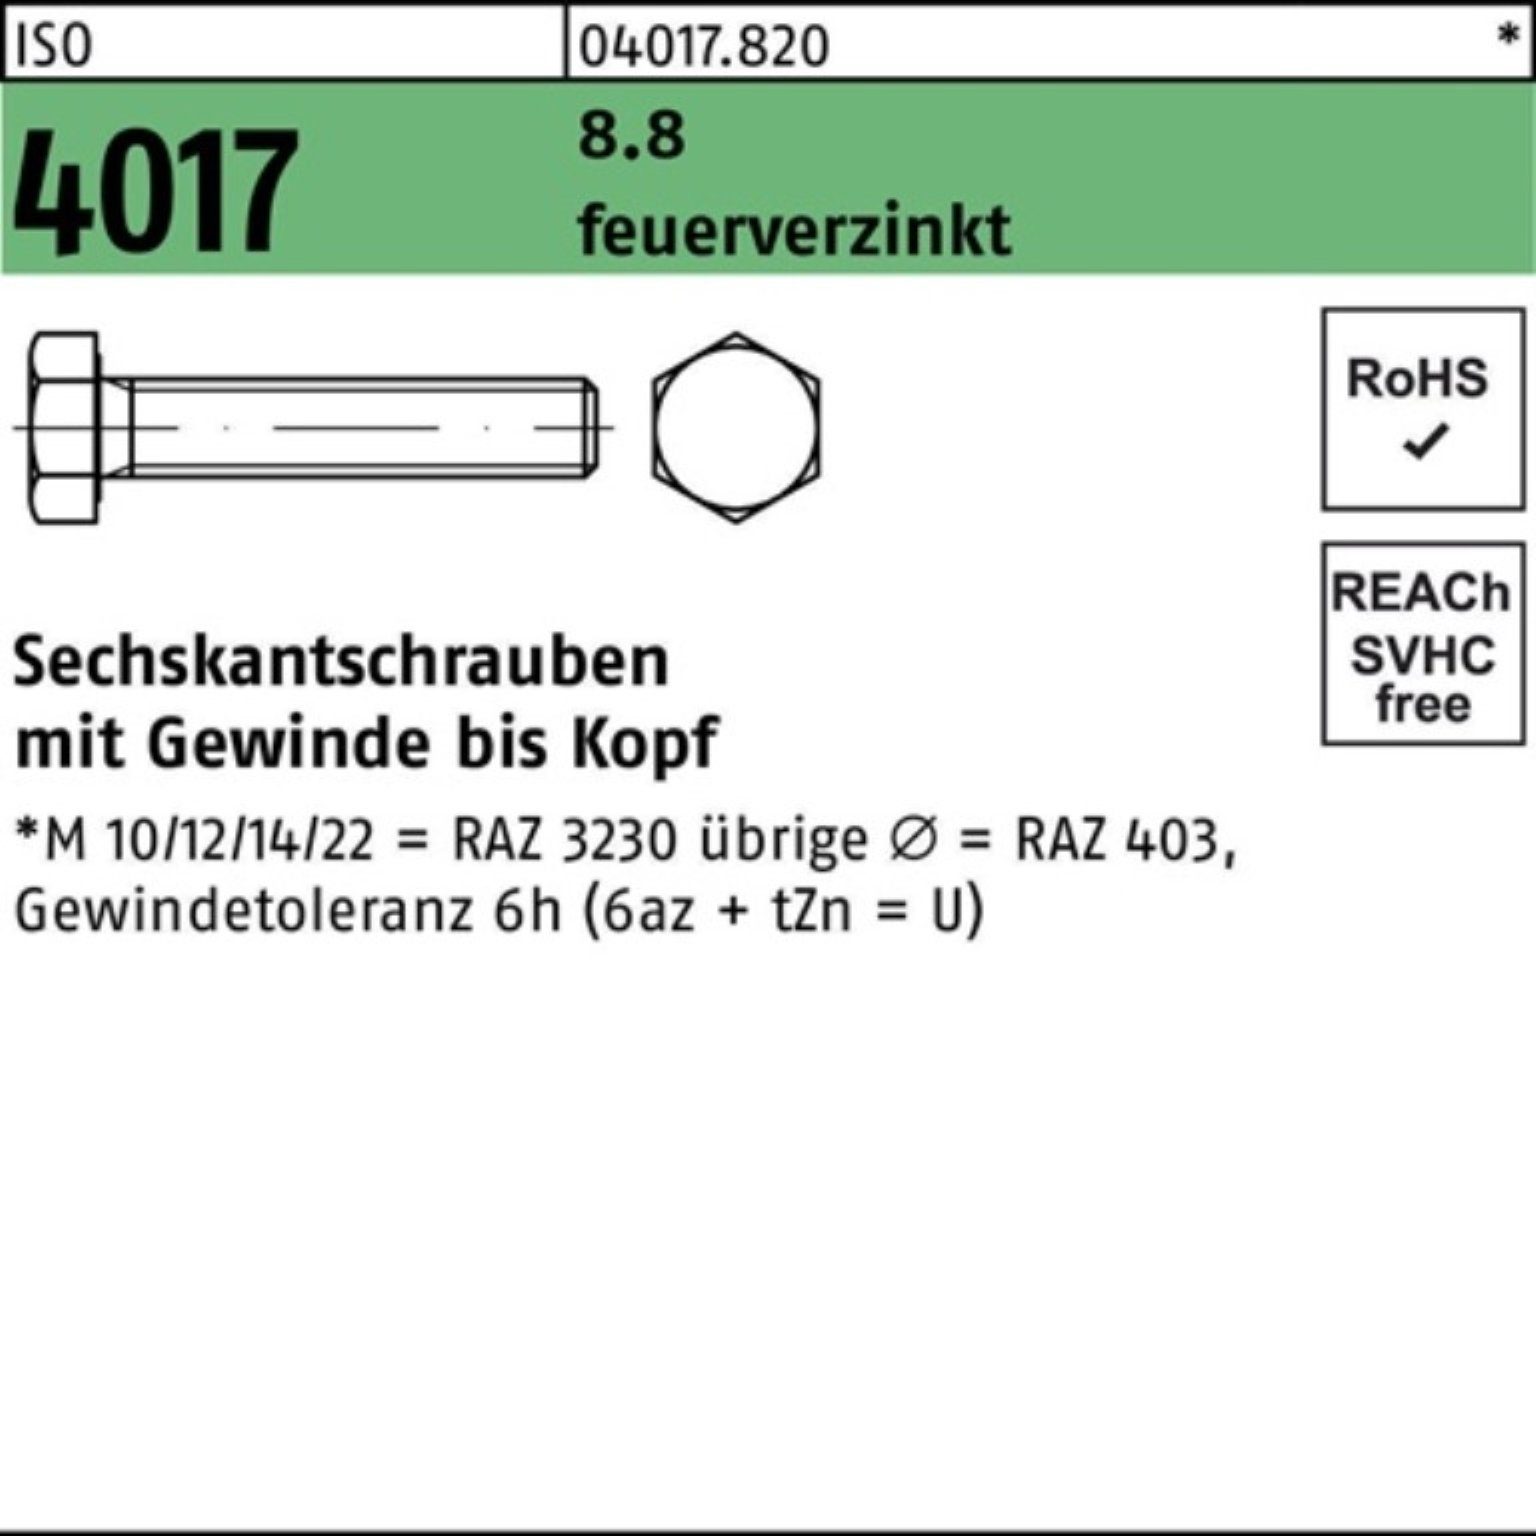 Bufab Sechskantschraube 100er Pack Sechskantschraube 25 St feuerverz. 8.8 VG 4017 ISO 30 M20x